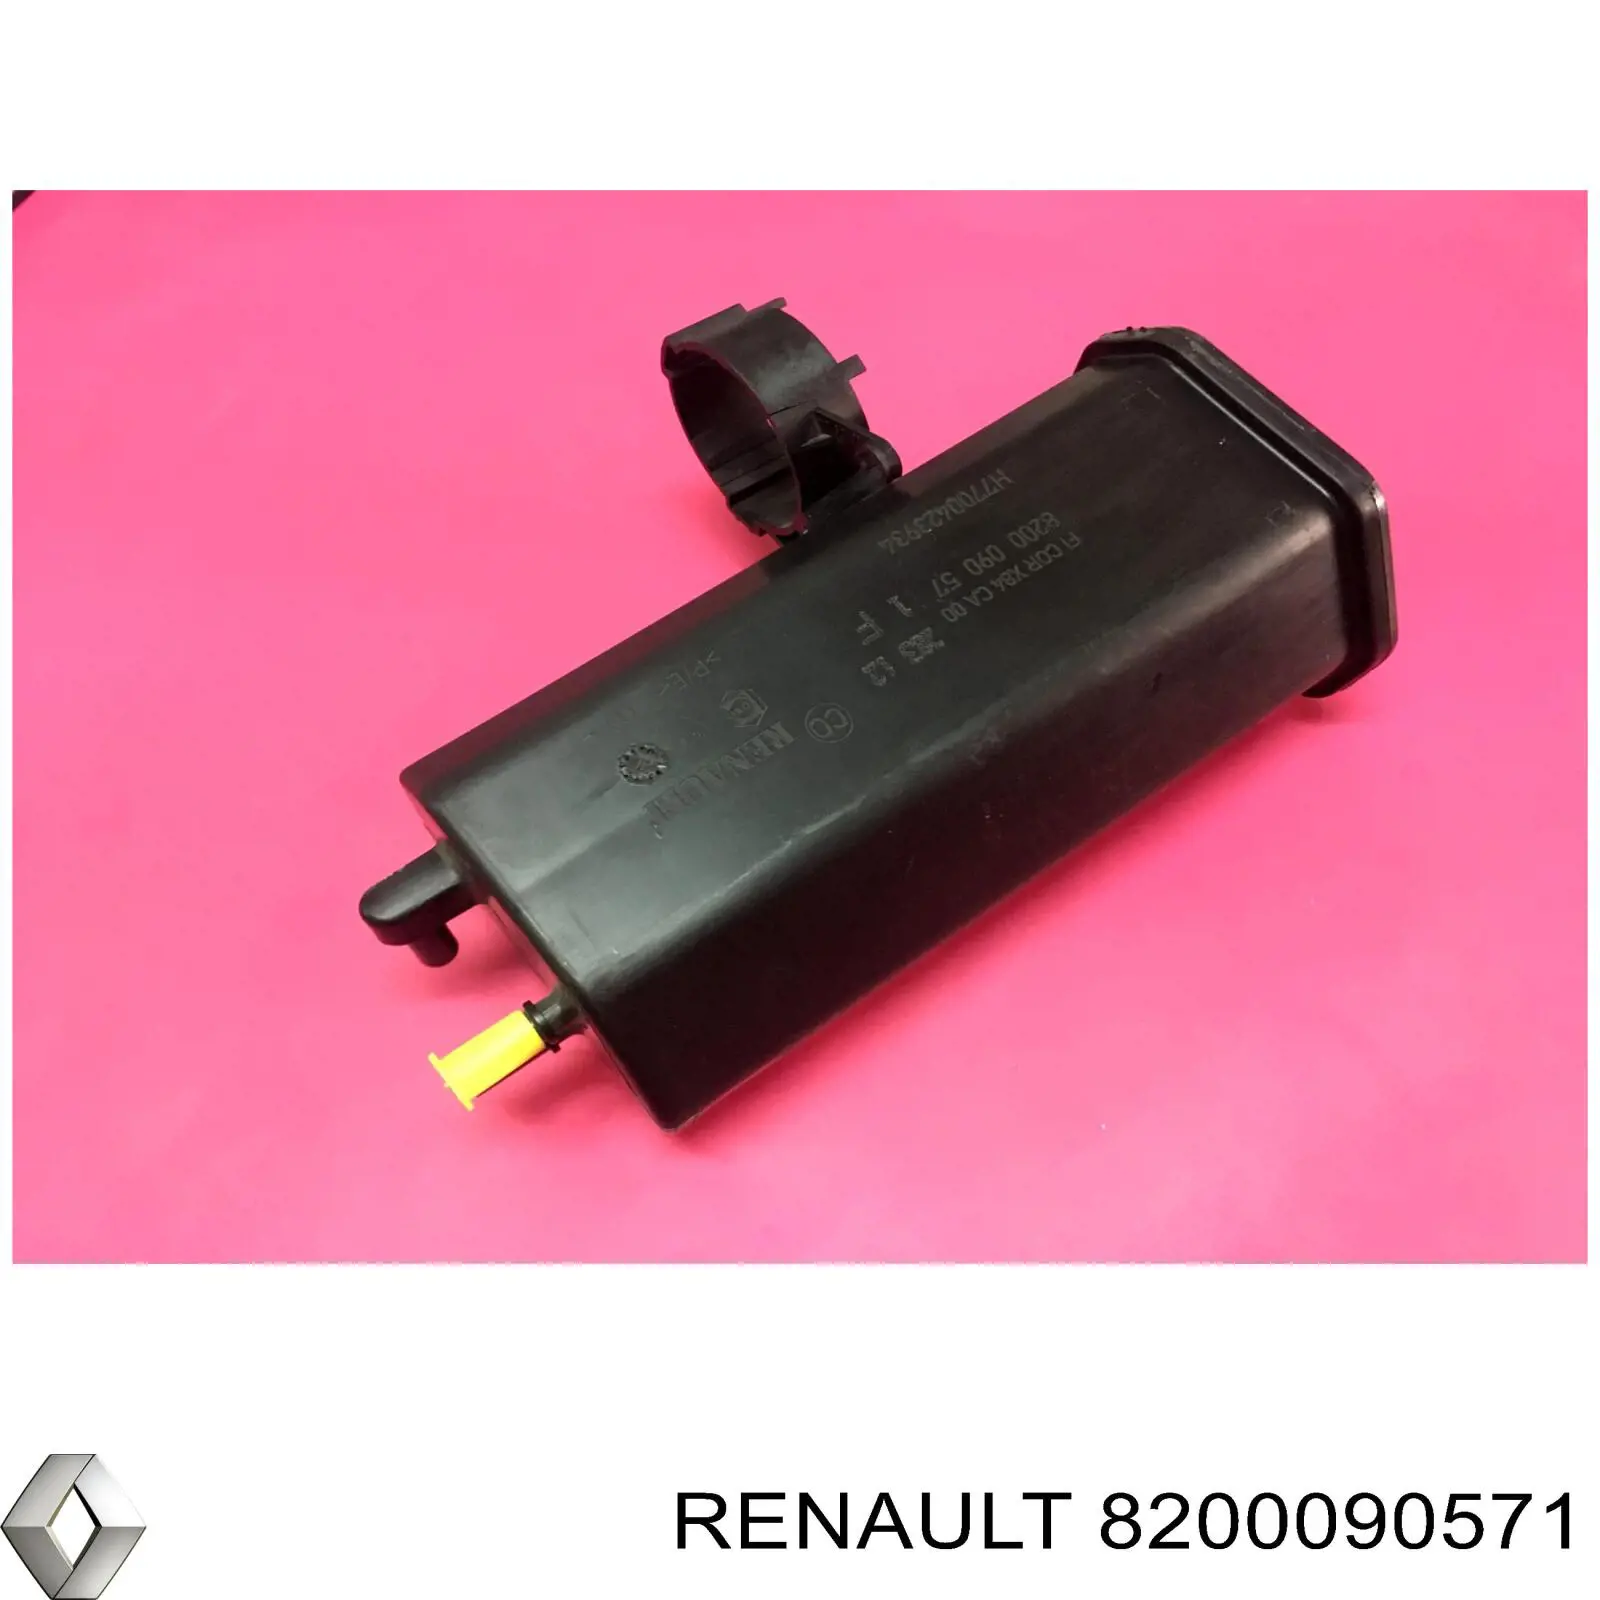 Adsorvedor dos vapores de combustível para Renault Megane (EM0)